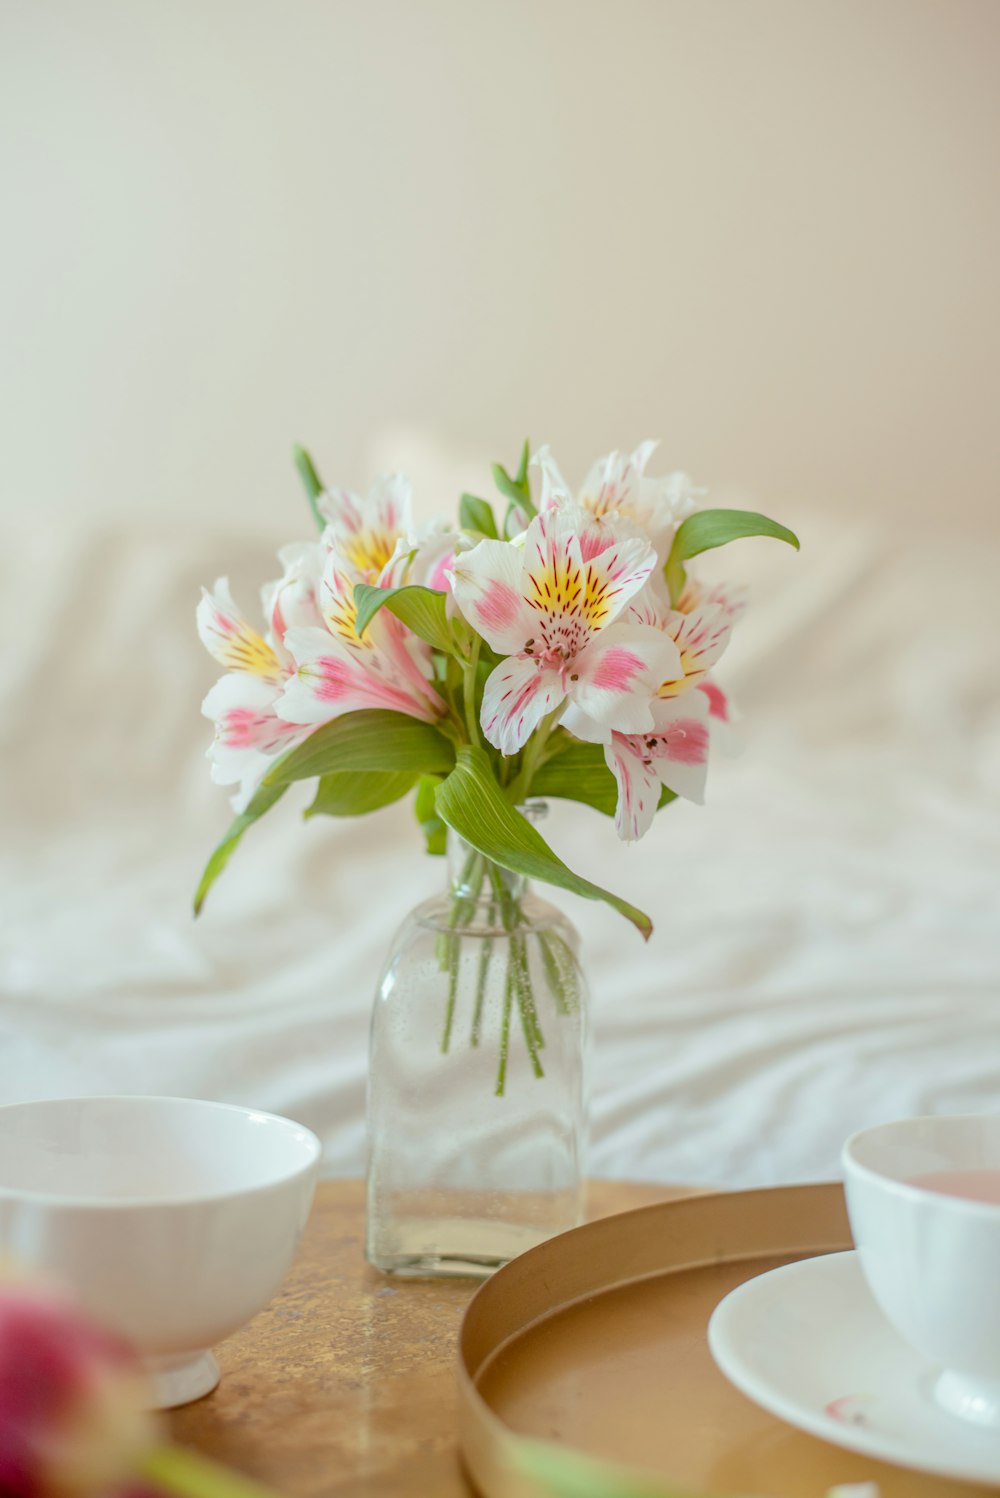 um vaso de vidro com flores rosas e brancas nele